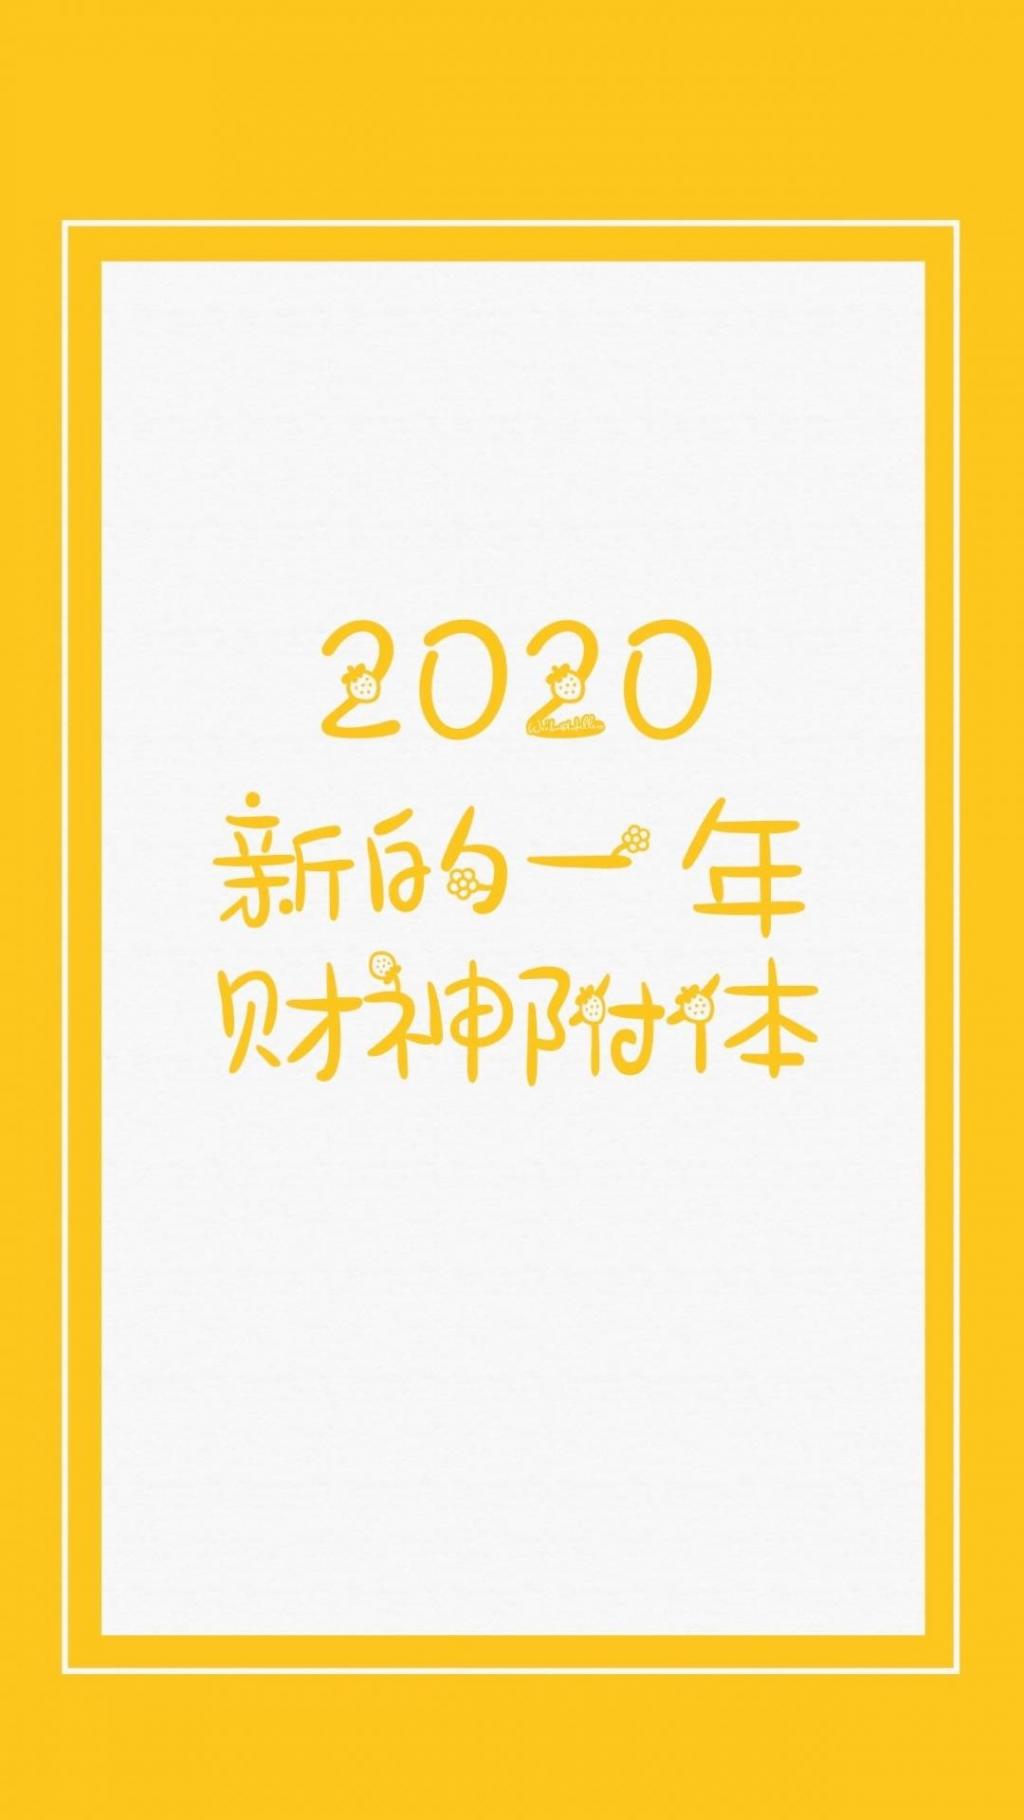 2020年:新的一年,财神附体